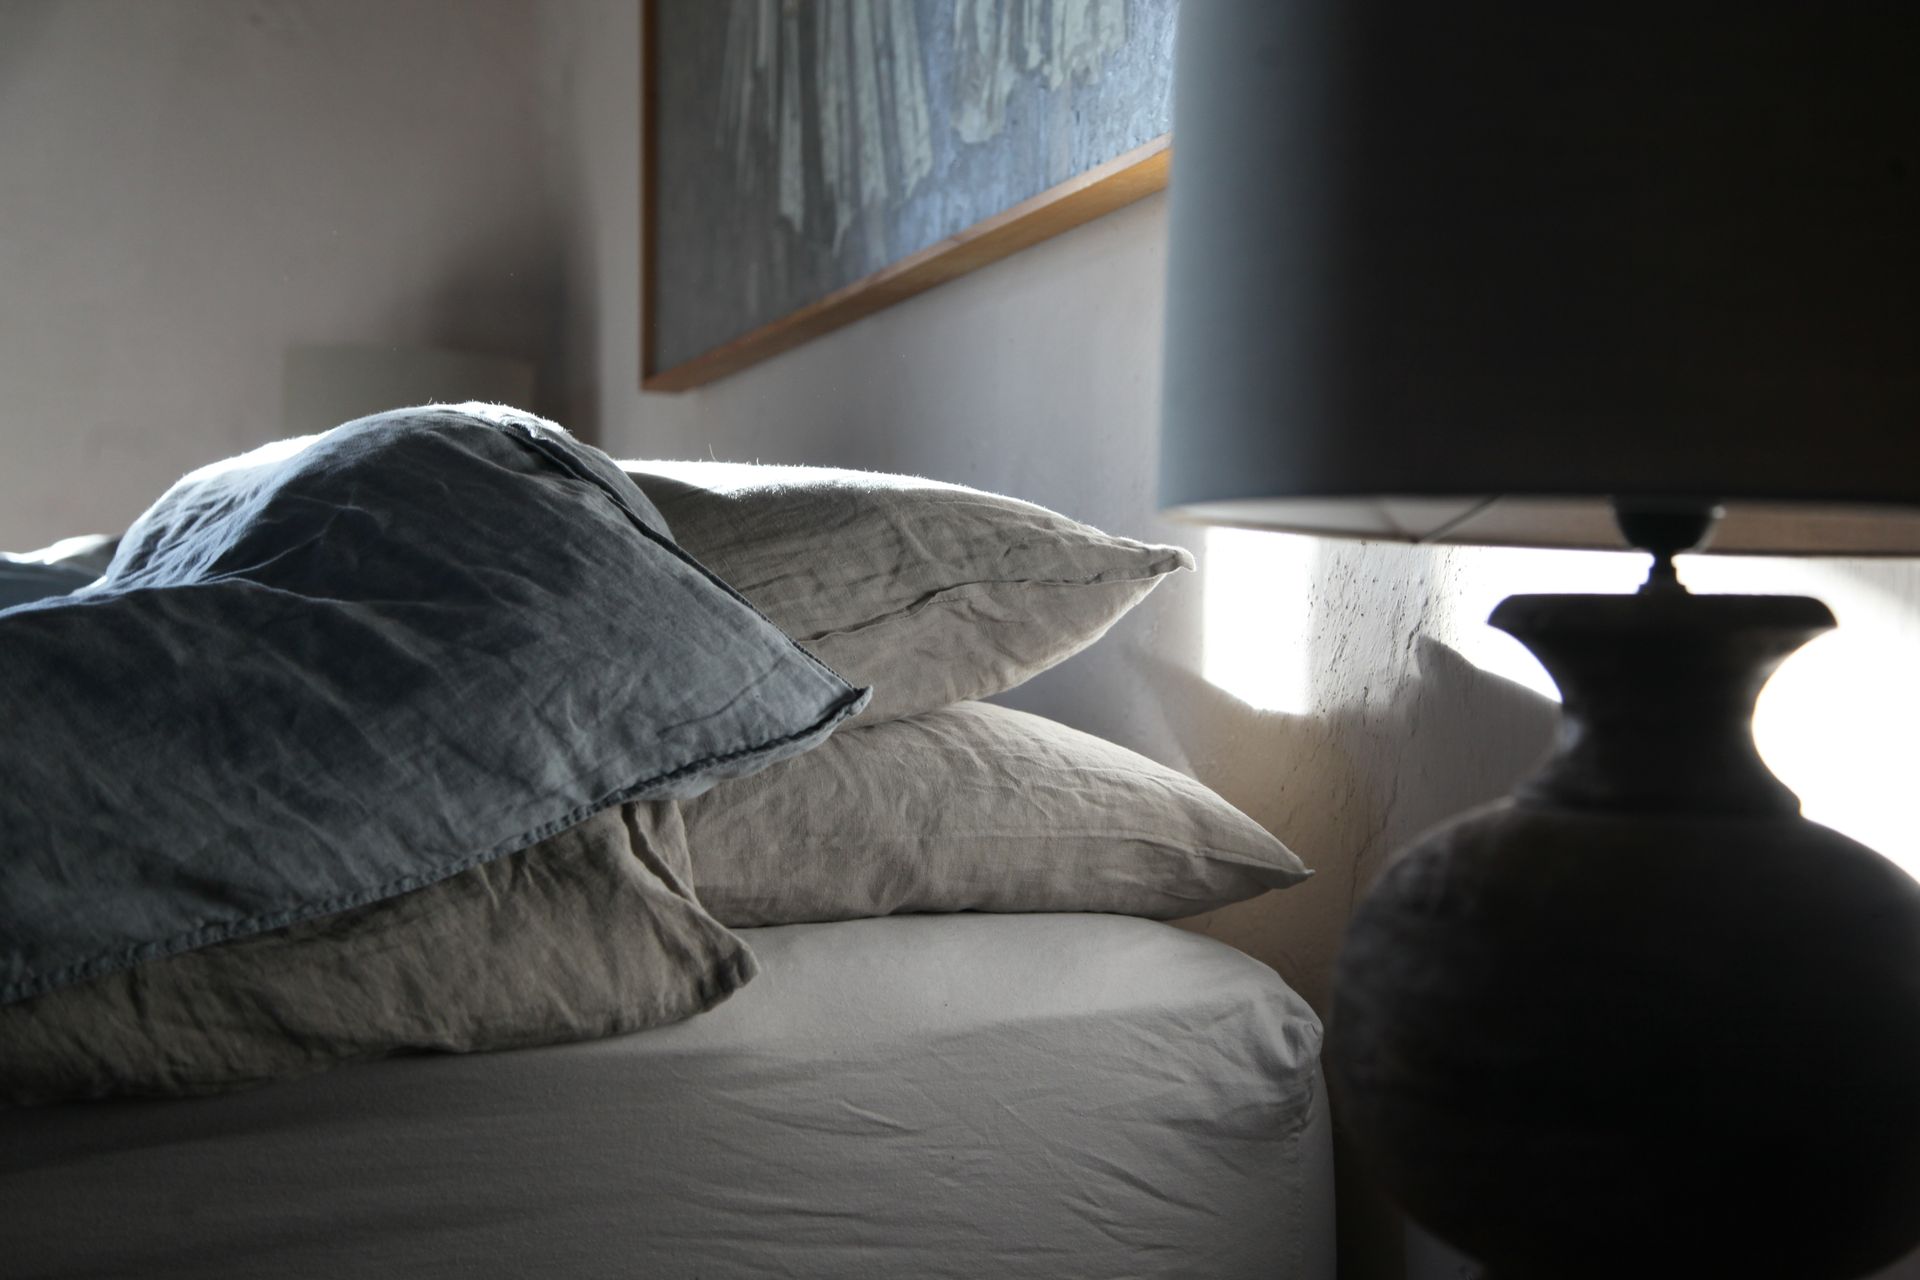 Nahaufnahme: Lampe (die am Nachttisch steht - den sieht man aber am Bild nicht) und Oberer Teil des Bettes mit Polster und Decke.